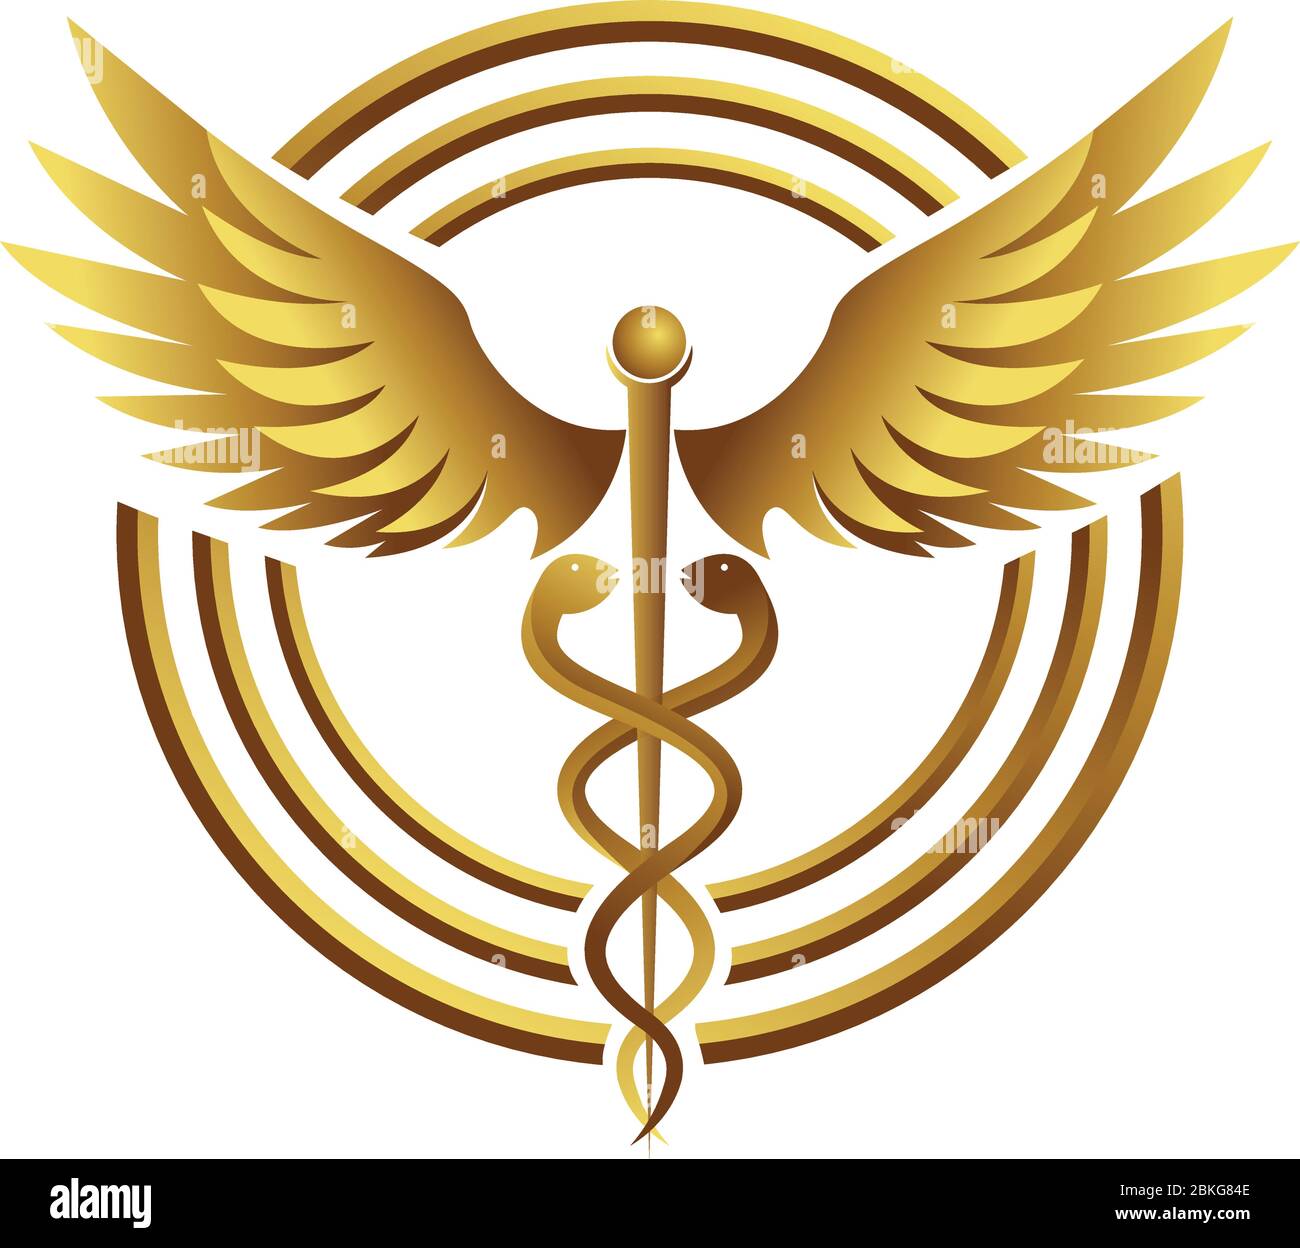 medizinisches logo Stock Vektor